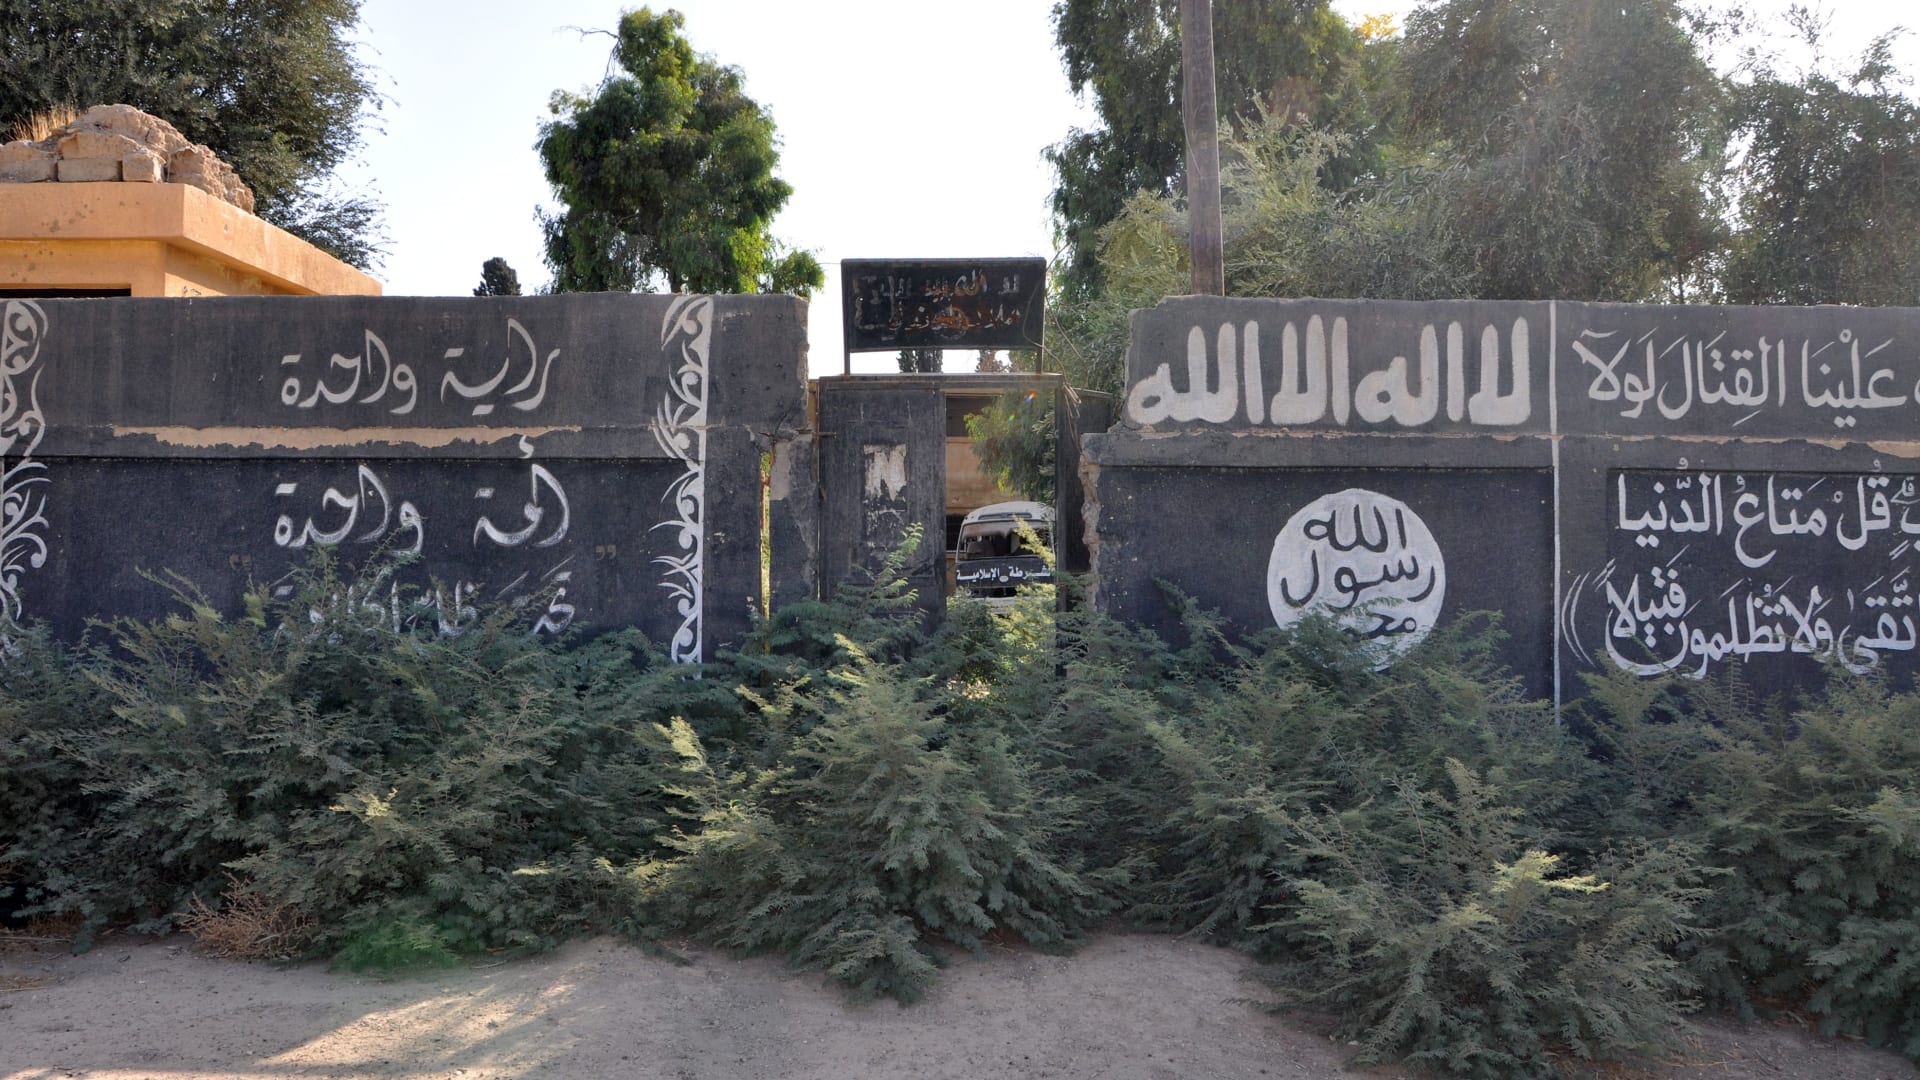 تحليل: مواجهات شرسة تطل برأسها في المنطقة بعد دحر داعش